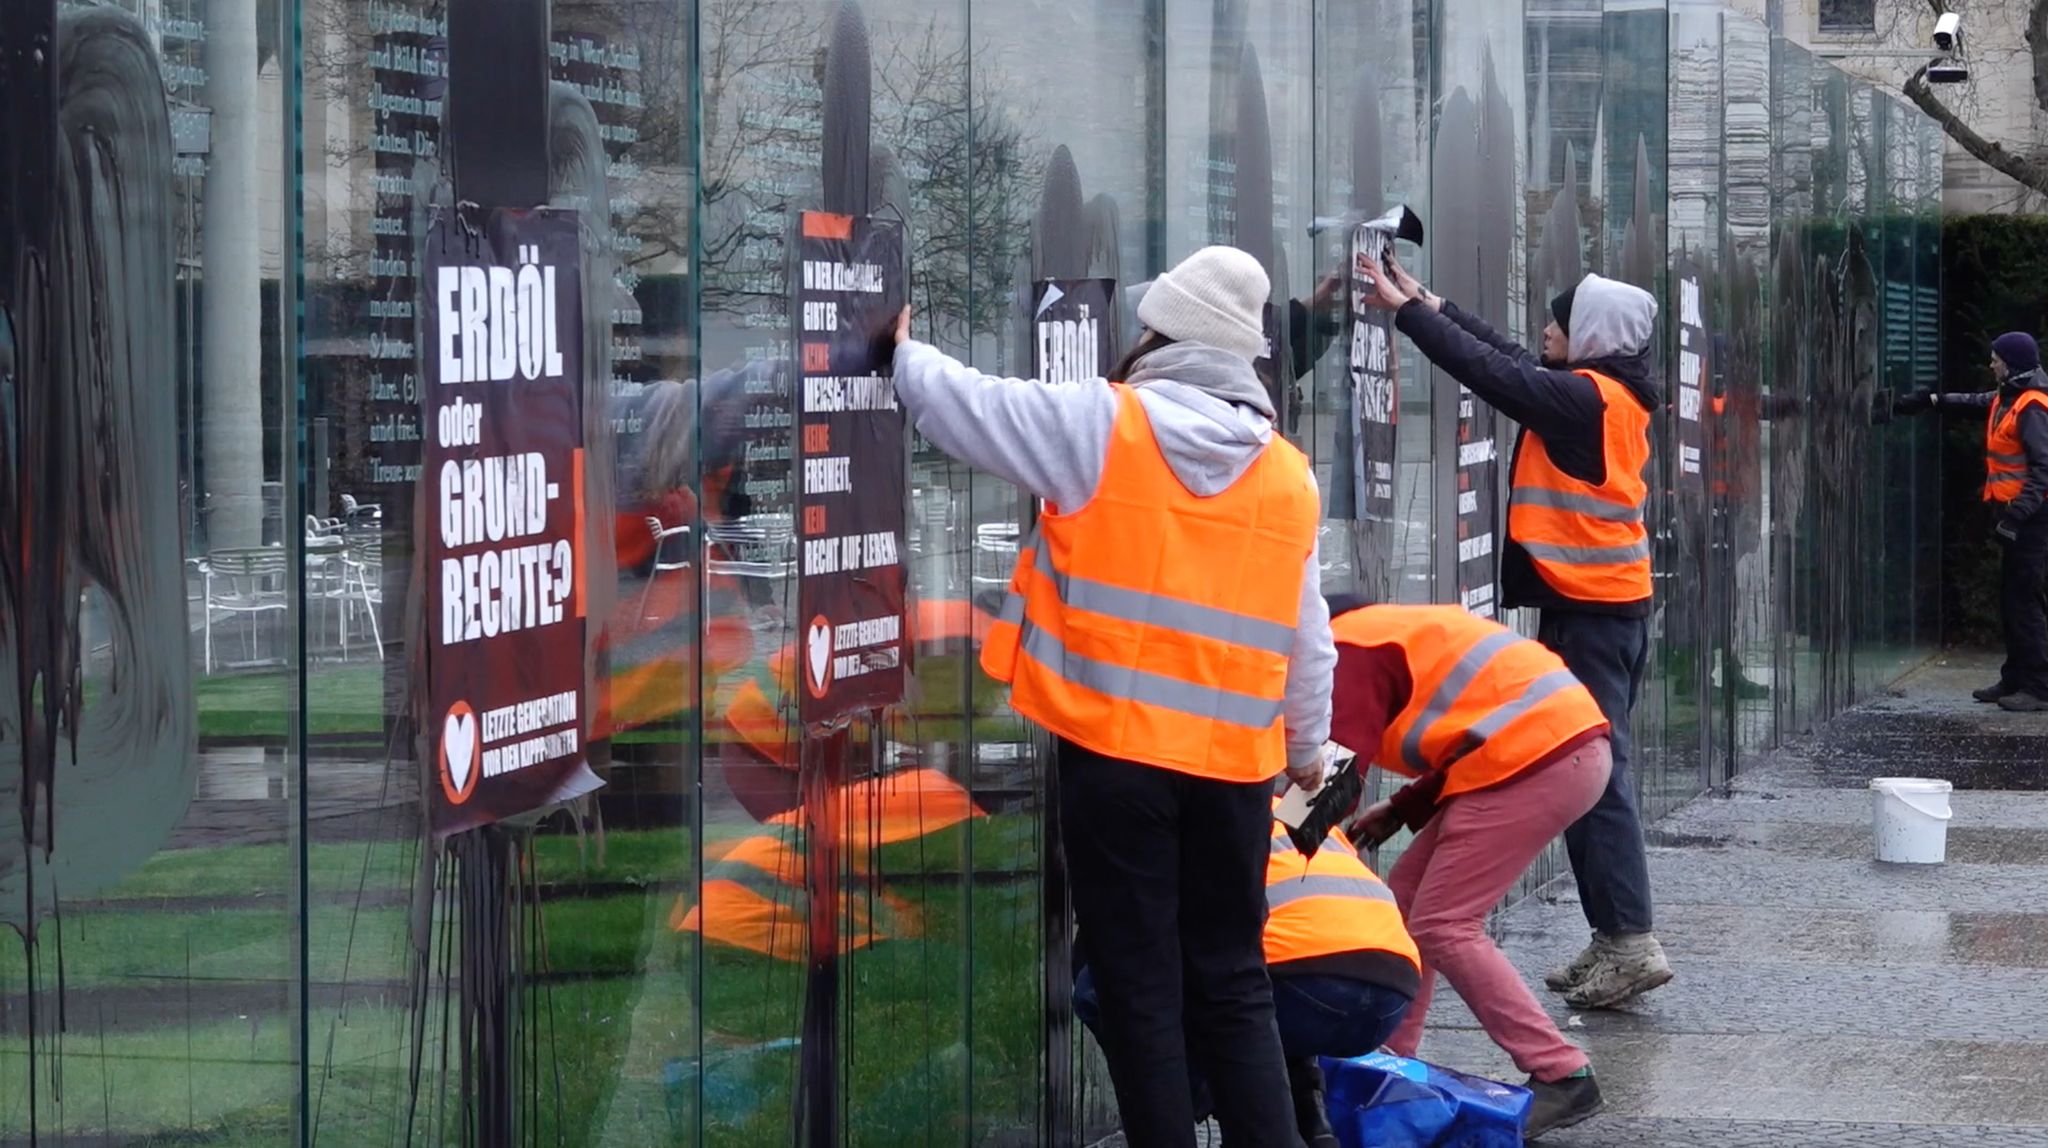 Klimaaktivisten der Letzten Generation beschmieren und plakatieren die gläserne Grundgesetz-Skulptur am Bundestag.